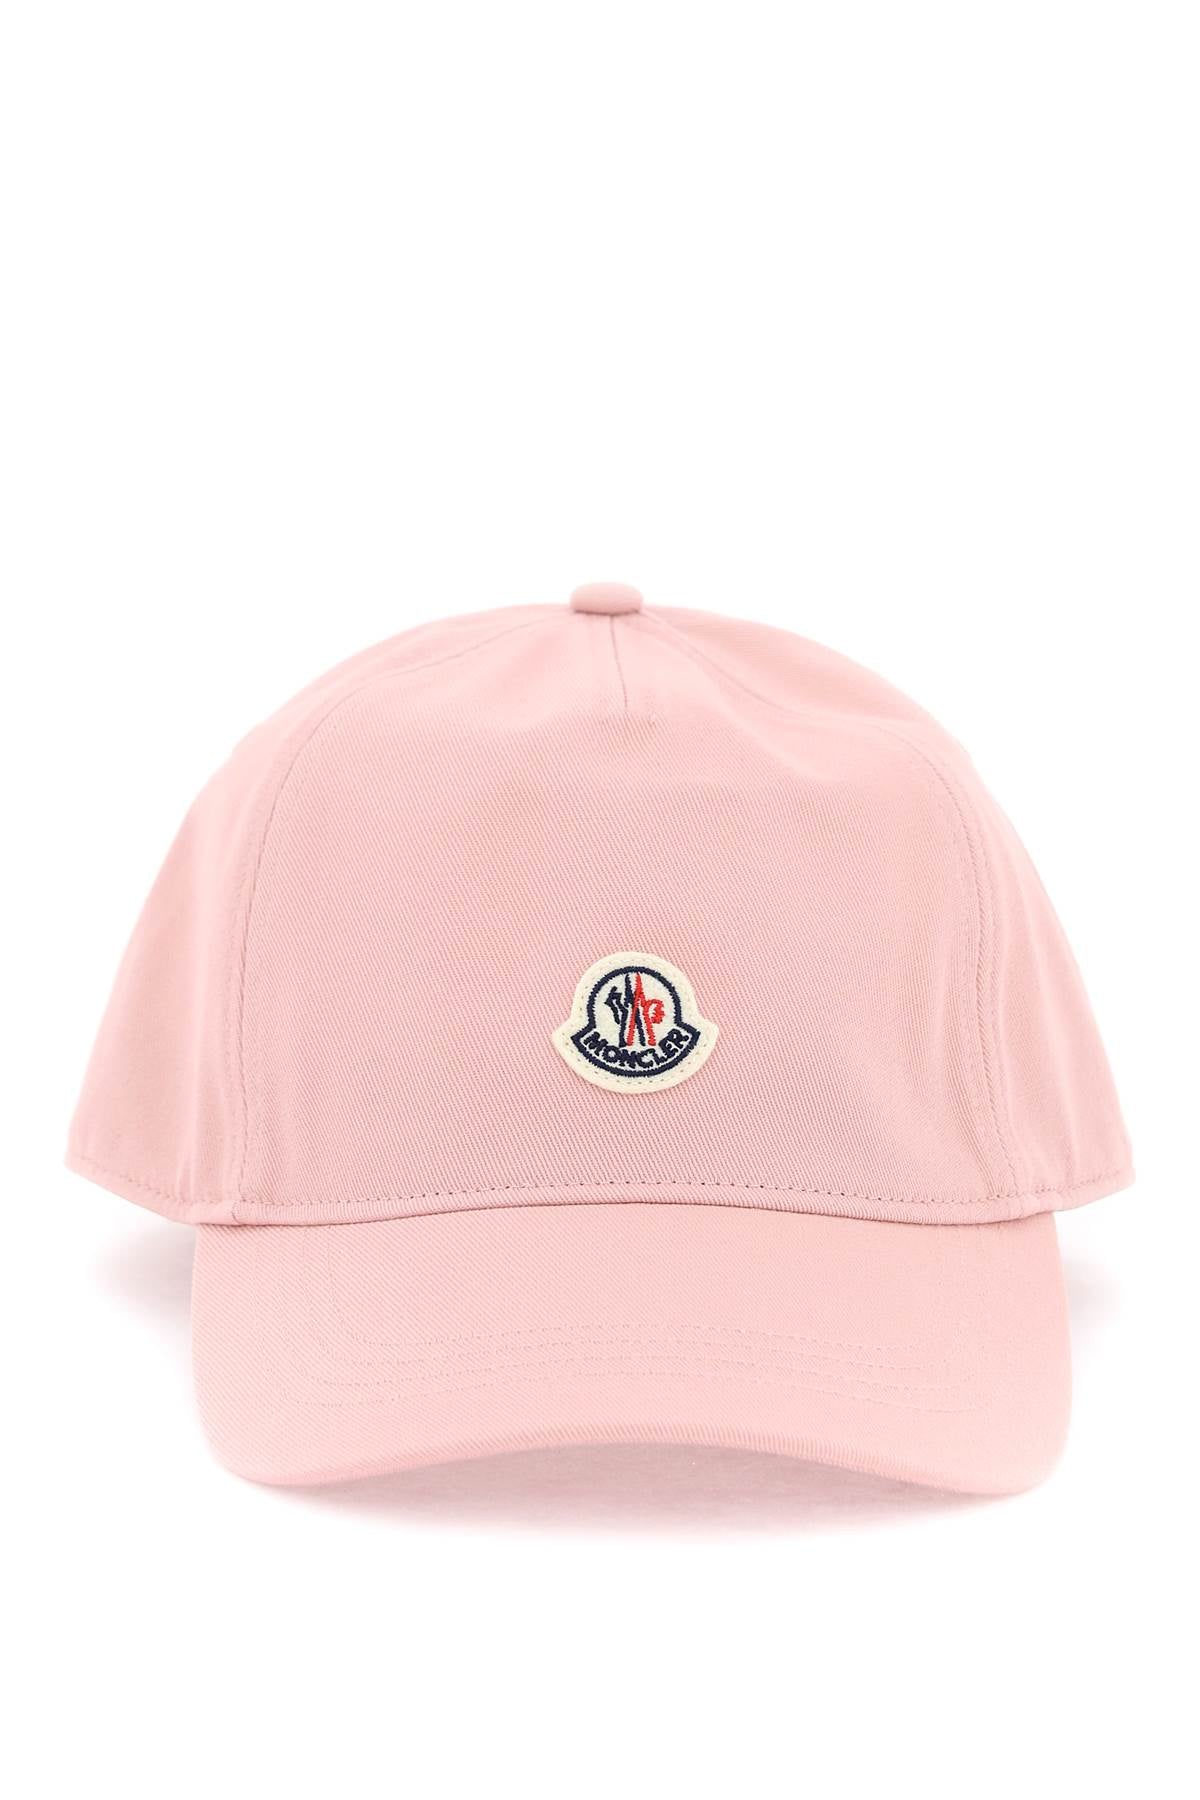 Moncler MONCLER Hat pink 3B00041V0006510